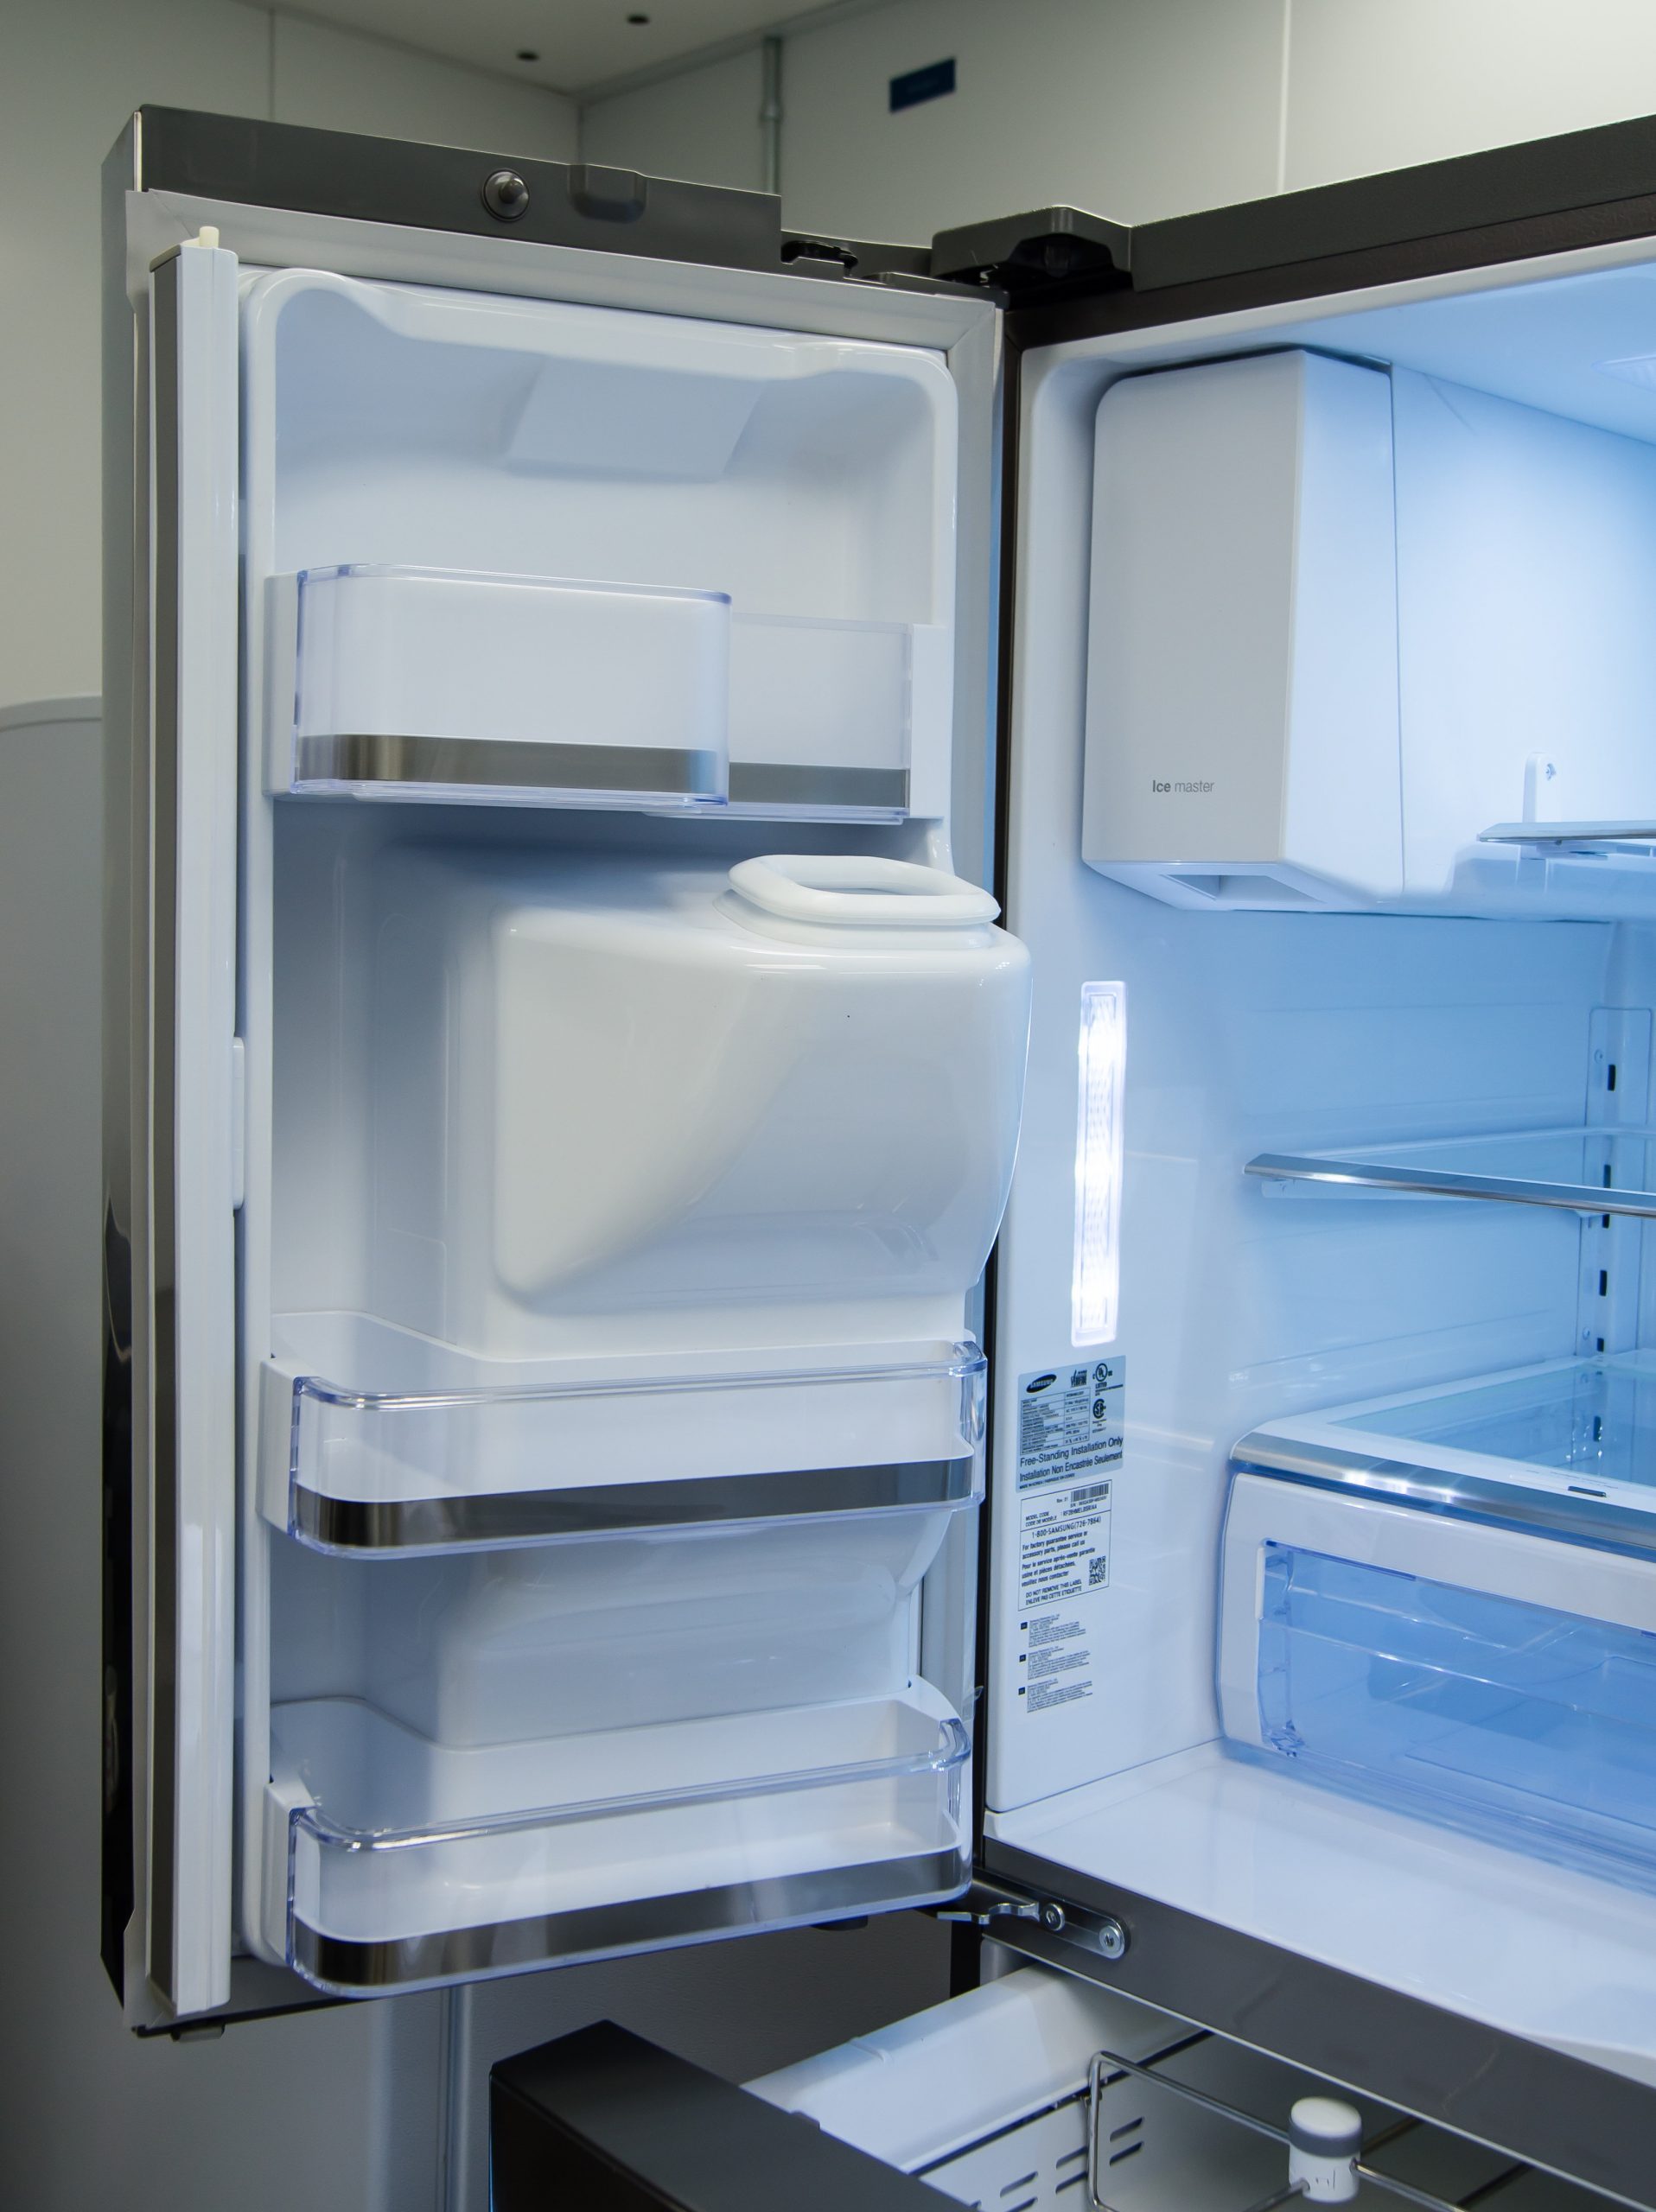 Samsung Rf28Hmelbsr Smart Refrigerator Review - Reviewed pour Fridge Samsung 